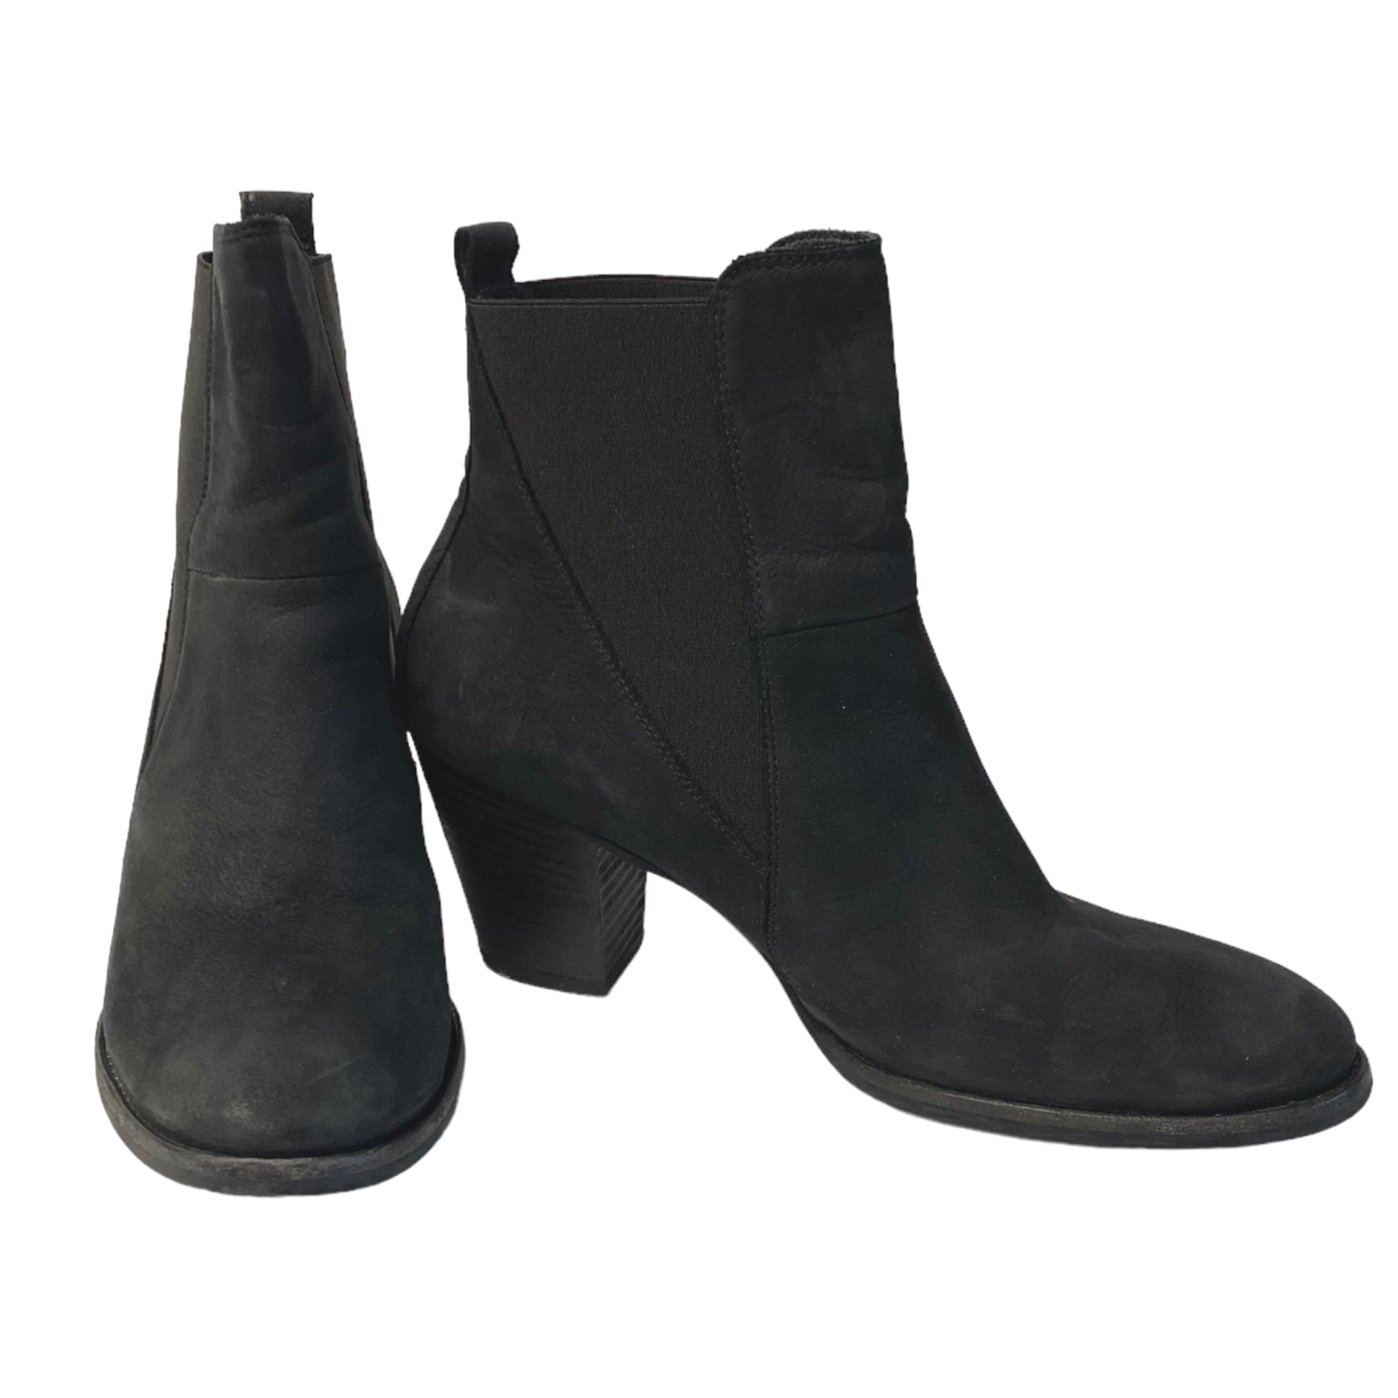 Paul Green Jules Boots Size 10 — Mercer Island Thrift Shop